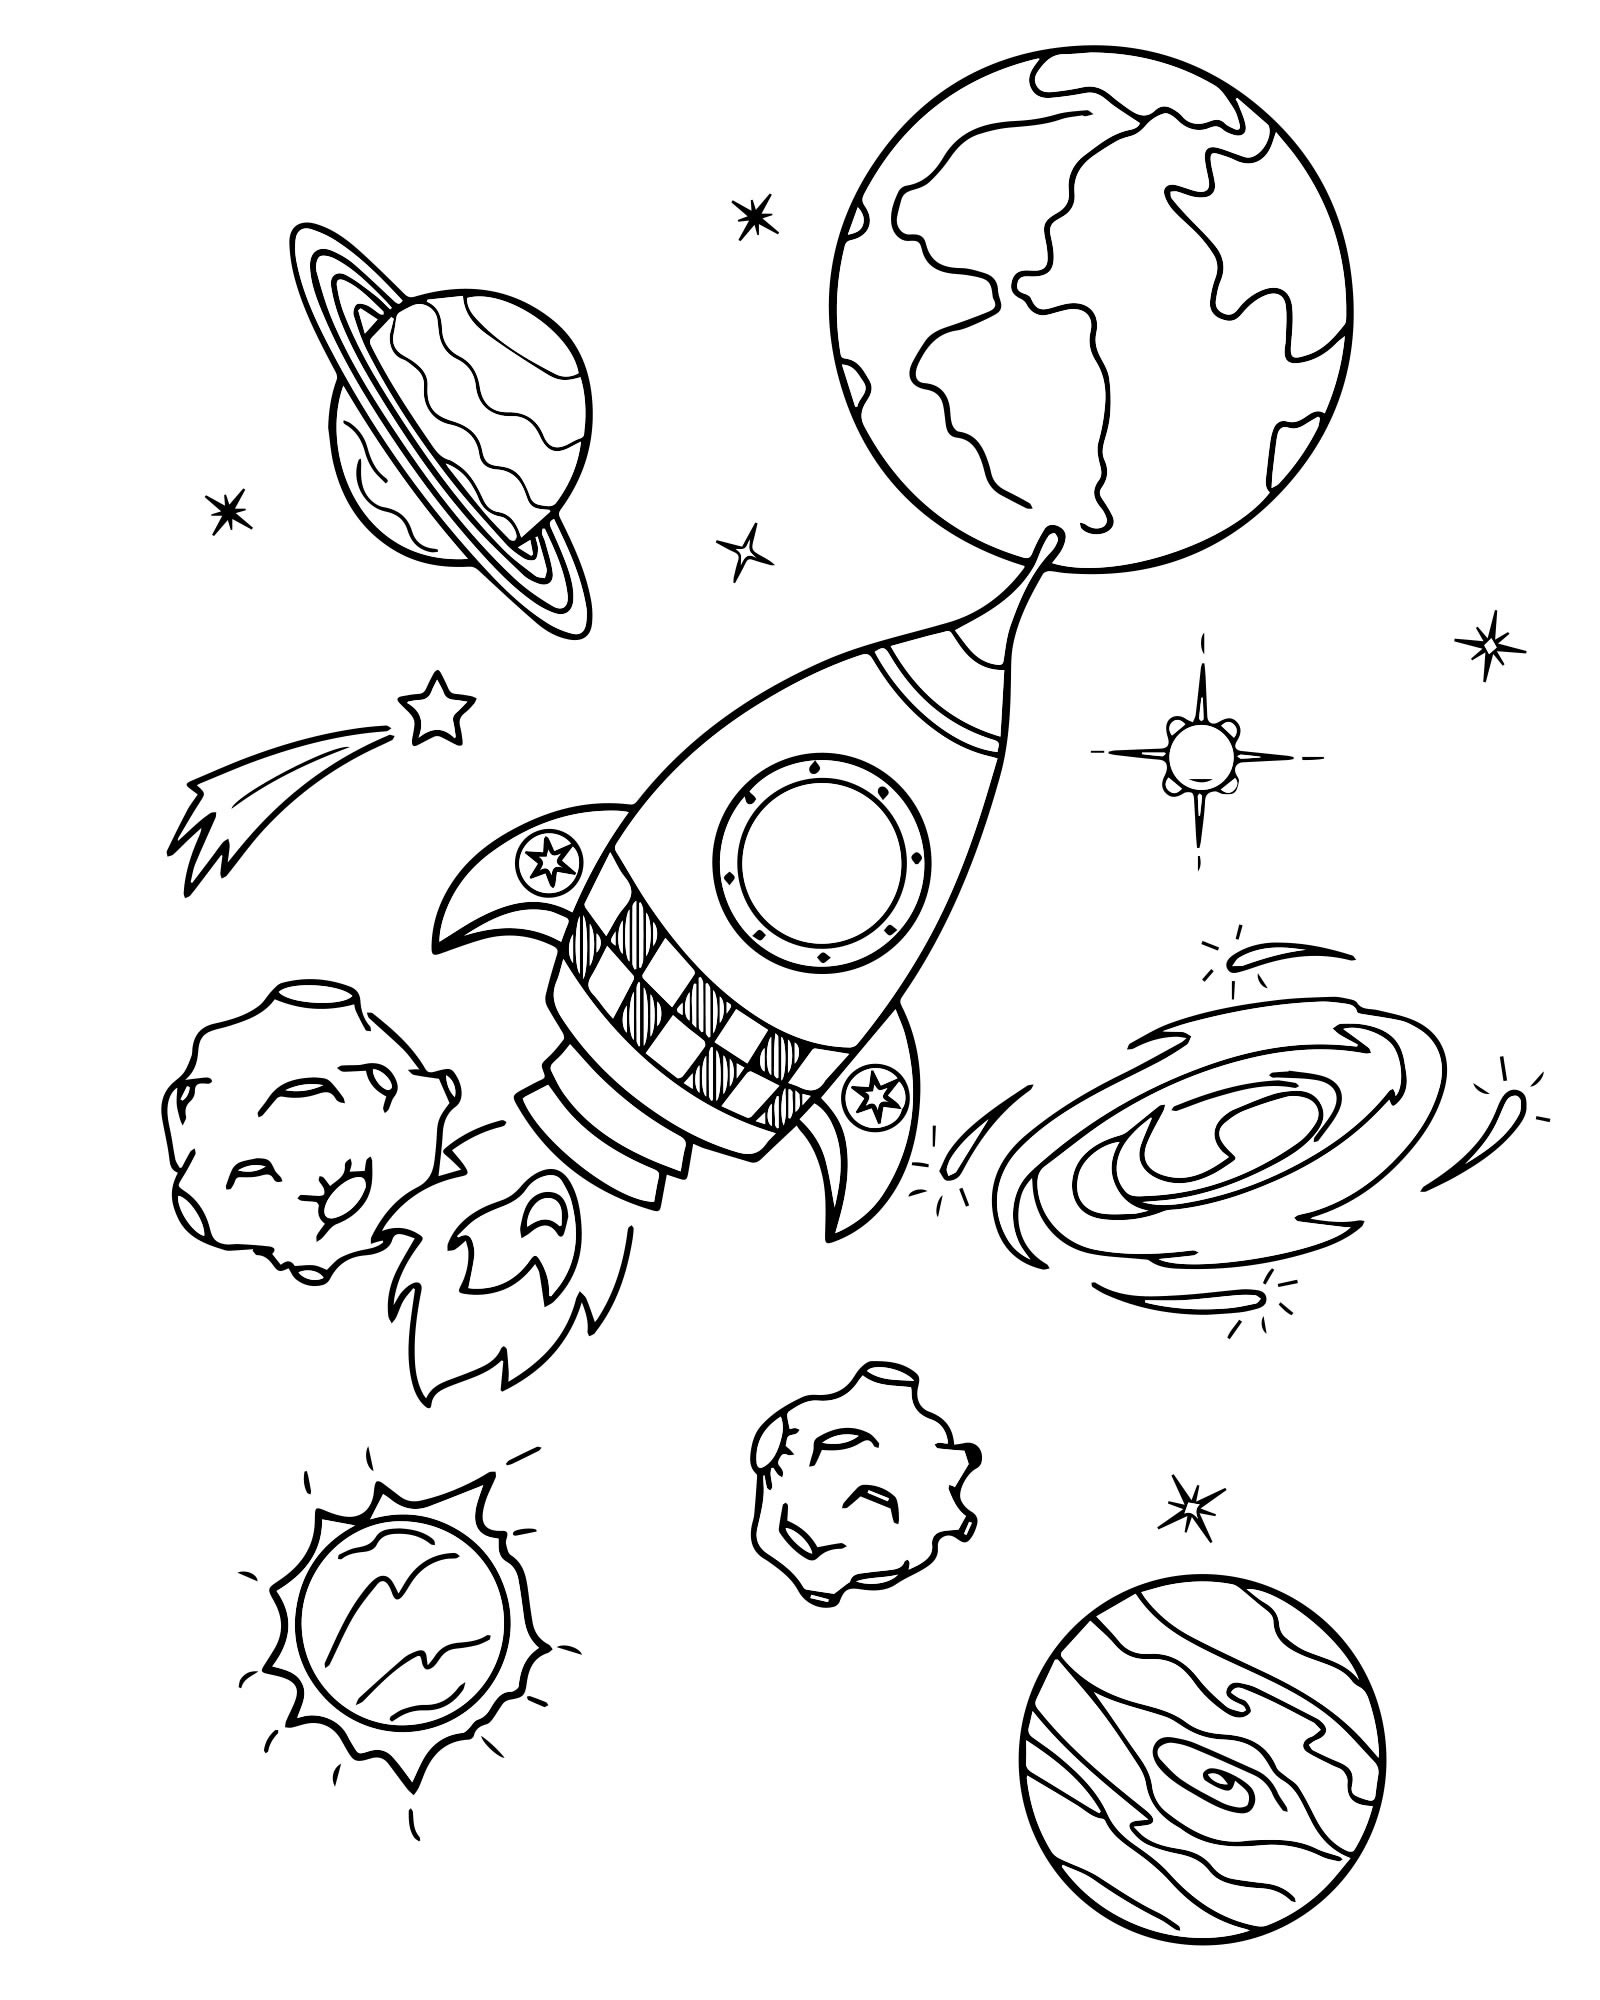 Рисунок на день космонавтики раскраска. Космос раскраска для детей. Раскраска. В космосе. Раскраска космос и планеты для детей. Раскраска для малышей. Космос.